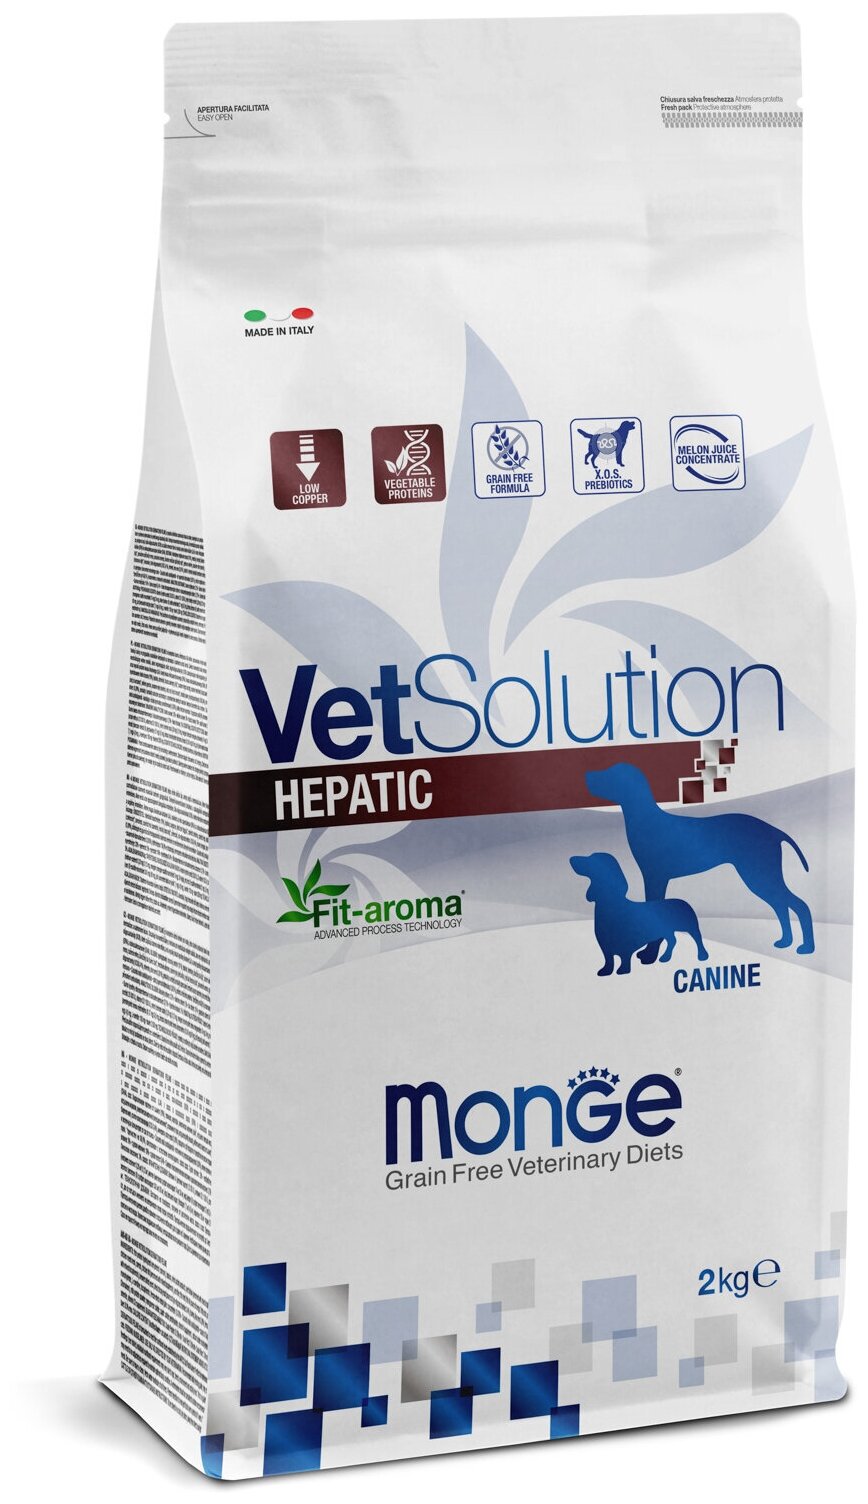 Сухой корм для собак Monge VetSolution, при заболеваниях печени, беззерновой 1 уп. х 1 шт. х 2 кг